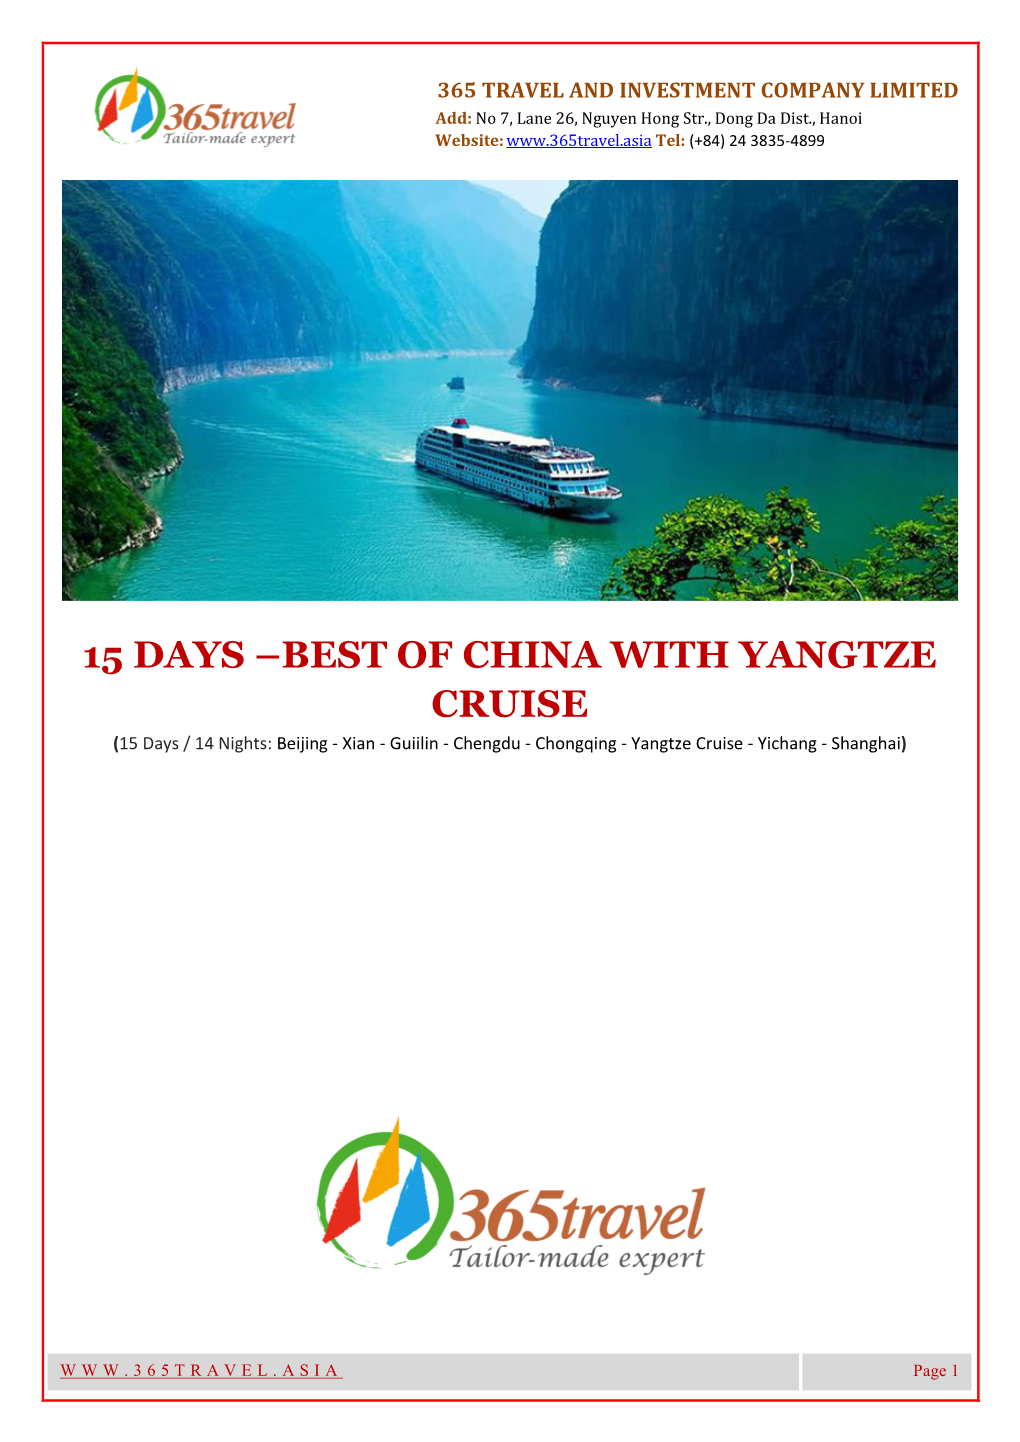 BEST of CHINA with YANGTZE CRUISE (15 Days / 14 Nights: Beijing - Xian - Guiilin - Chengdu - Chongqing - Yangtze Cruise - Yichang - Shanghai)